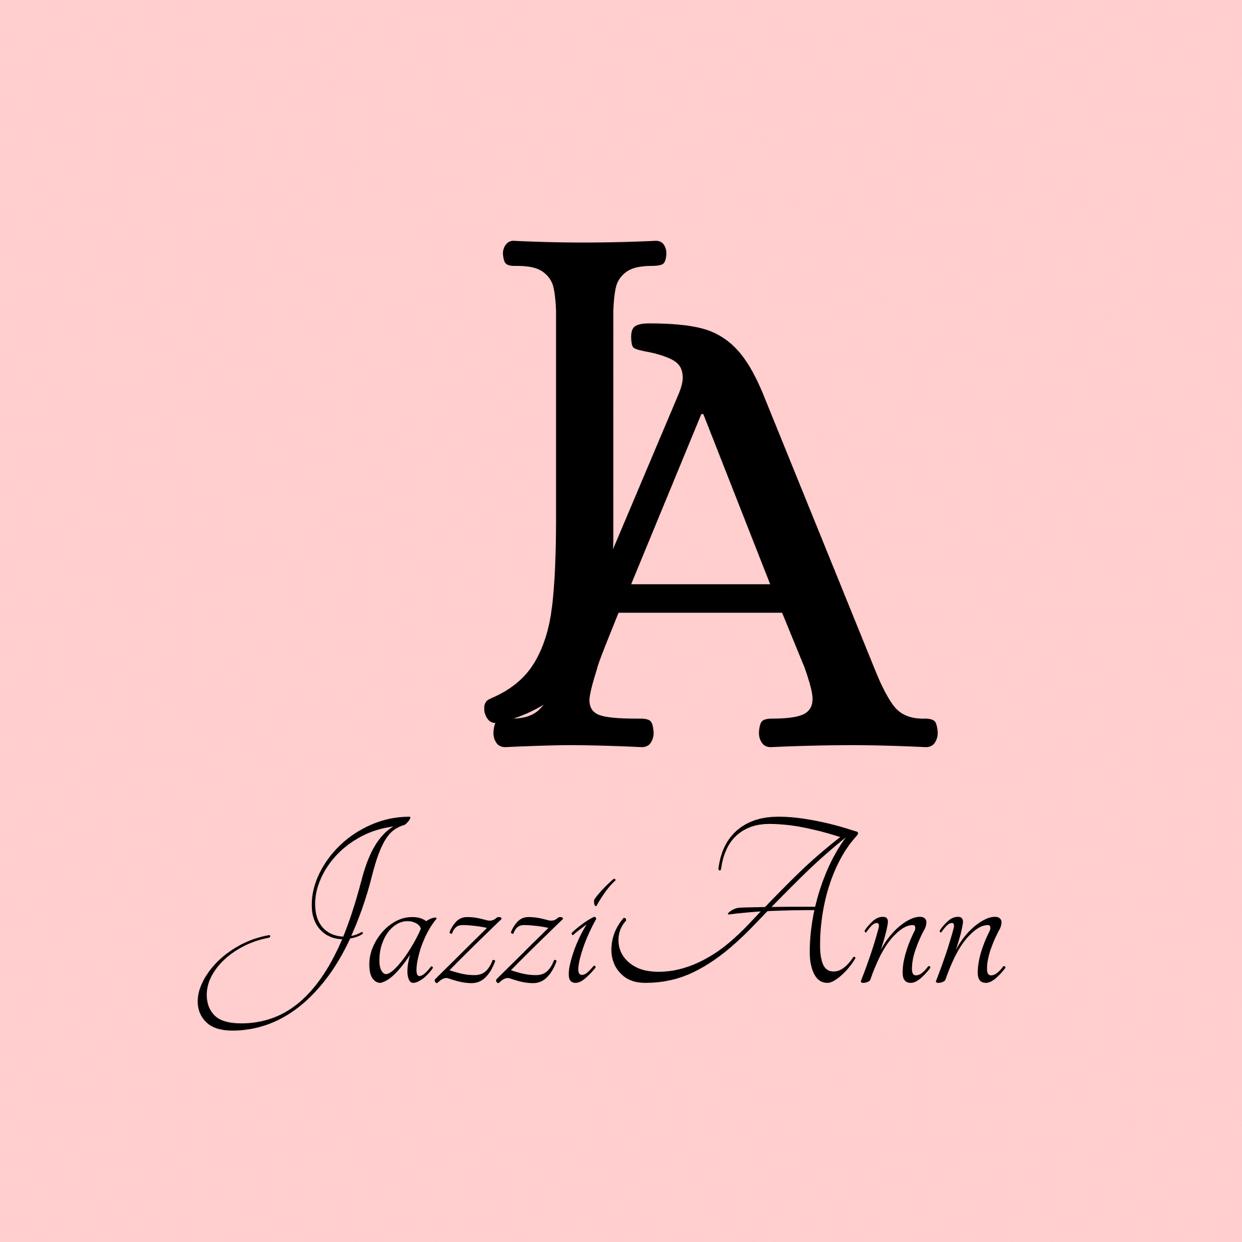 JazziAnn.shop 's images